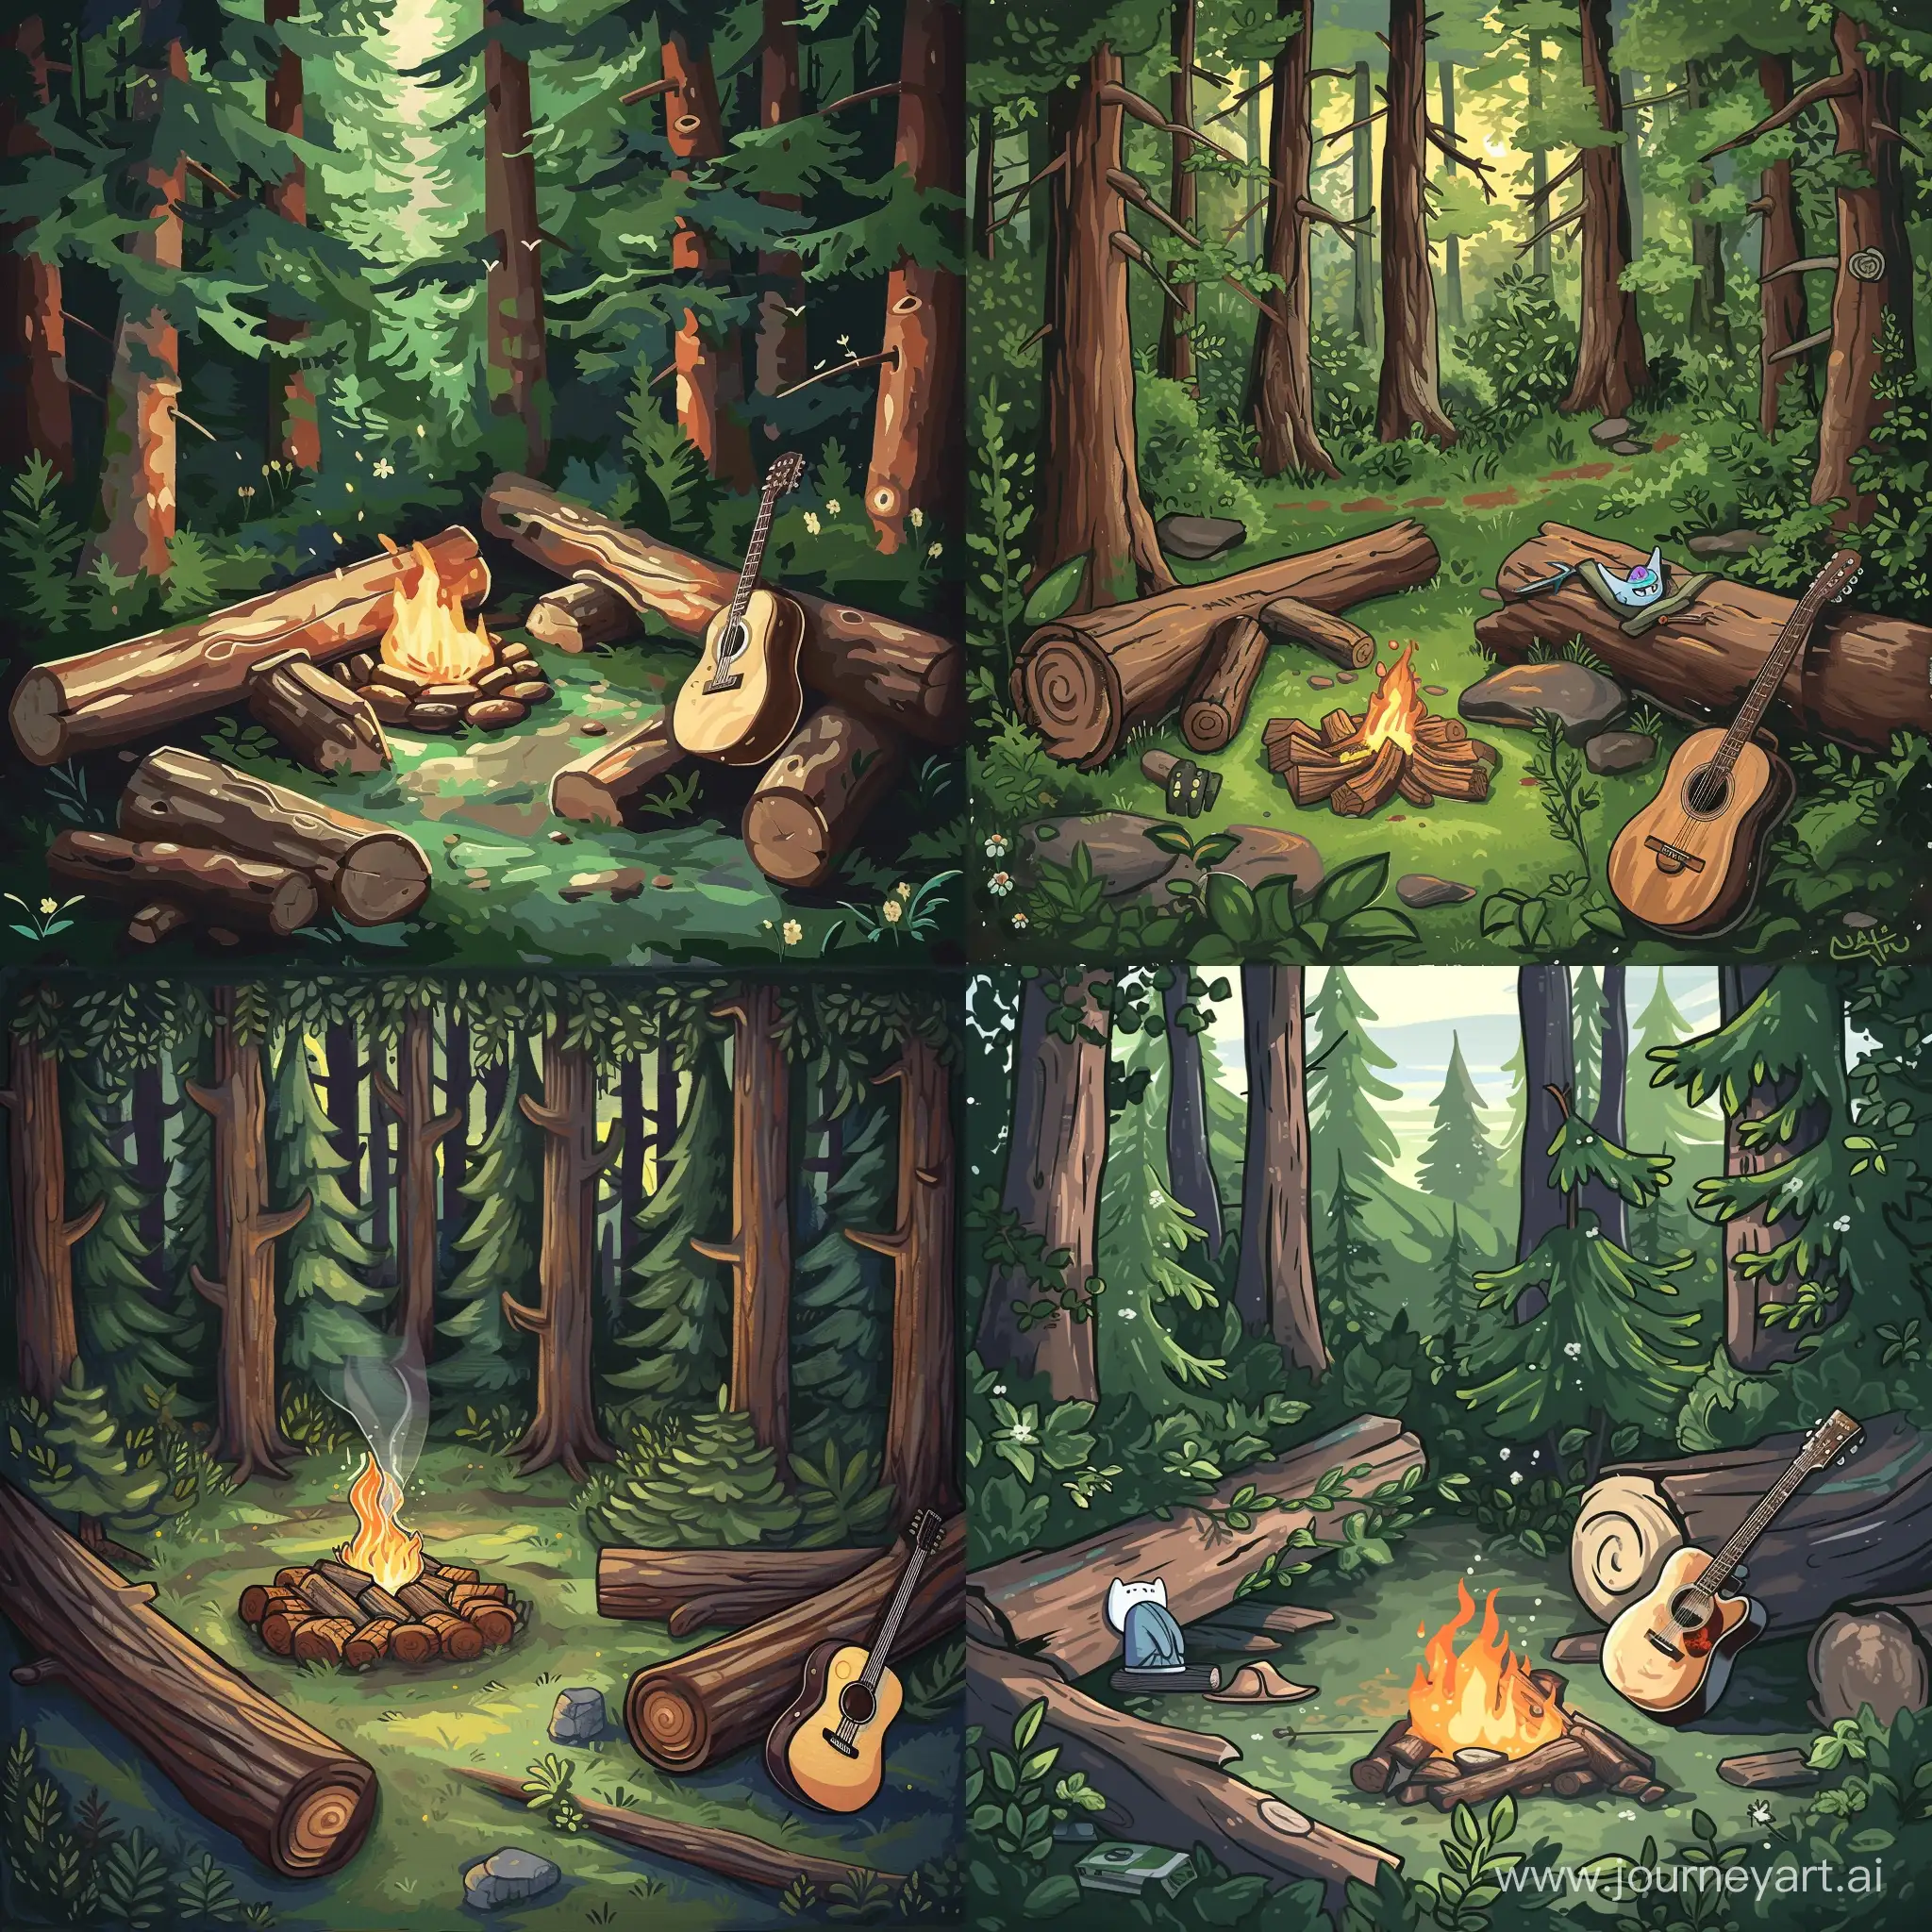 Рисунок в стиле Adventure Time, на котором изображён лес, костёр, брёвна и гитара, опирающаяся на одно из брёвен